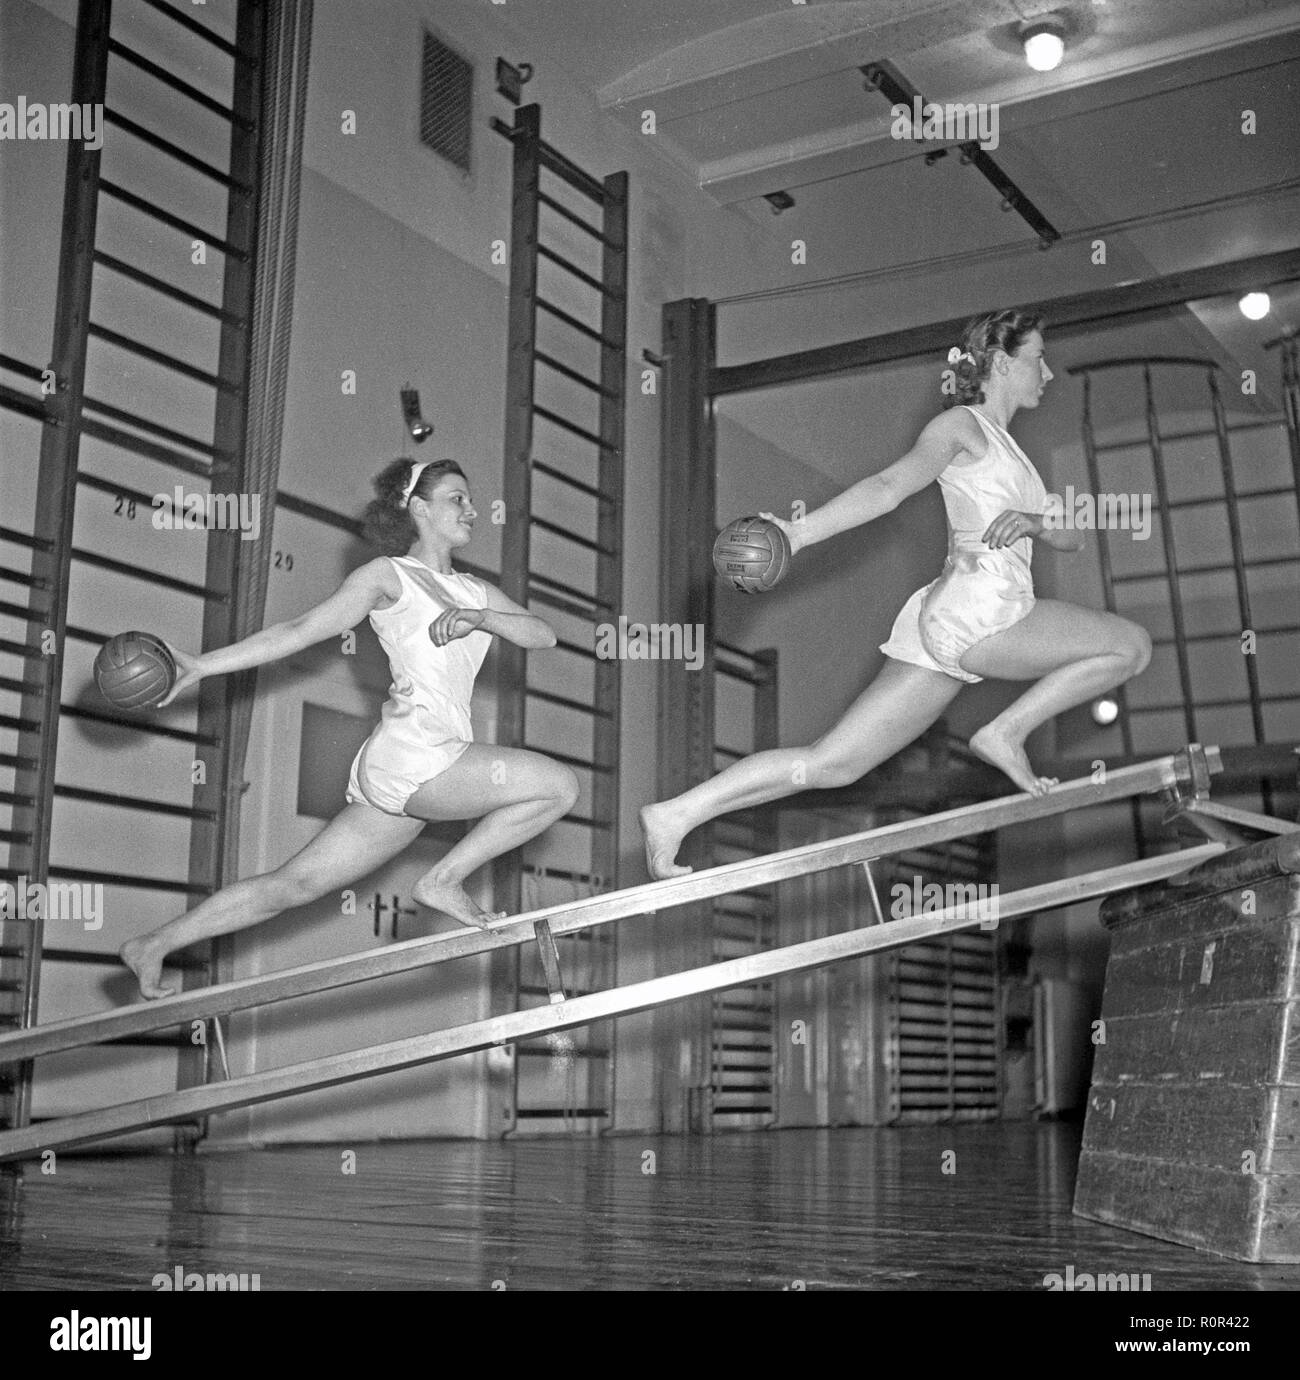 Gymnastik in den 1940er Jahren. Zwei junge Frauen balancieren mit Gymnasium-Geräten und synchronisieren gleichzeitig ihre Bewegungen mit Bällen. 1949 Schweden Photo Kristoffersson Ref. AN70-4 Stockfoto